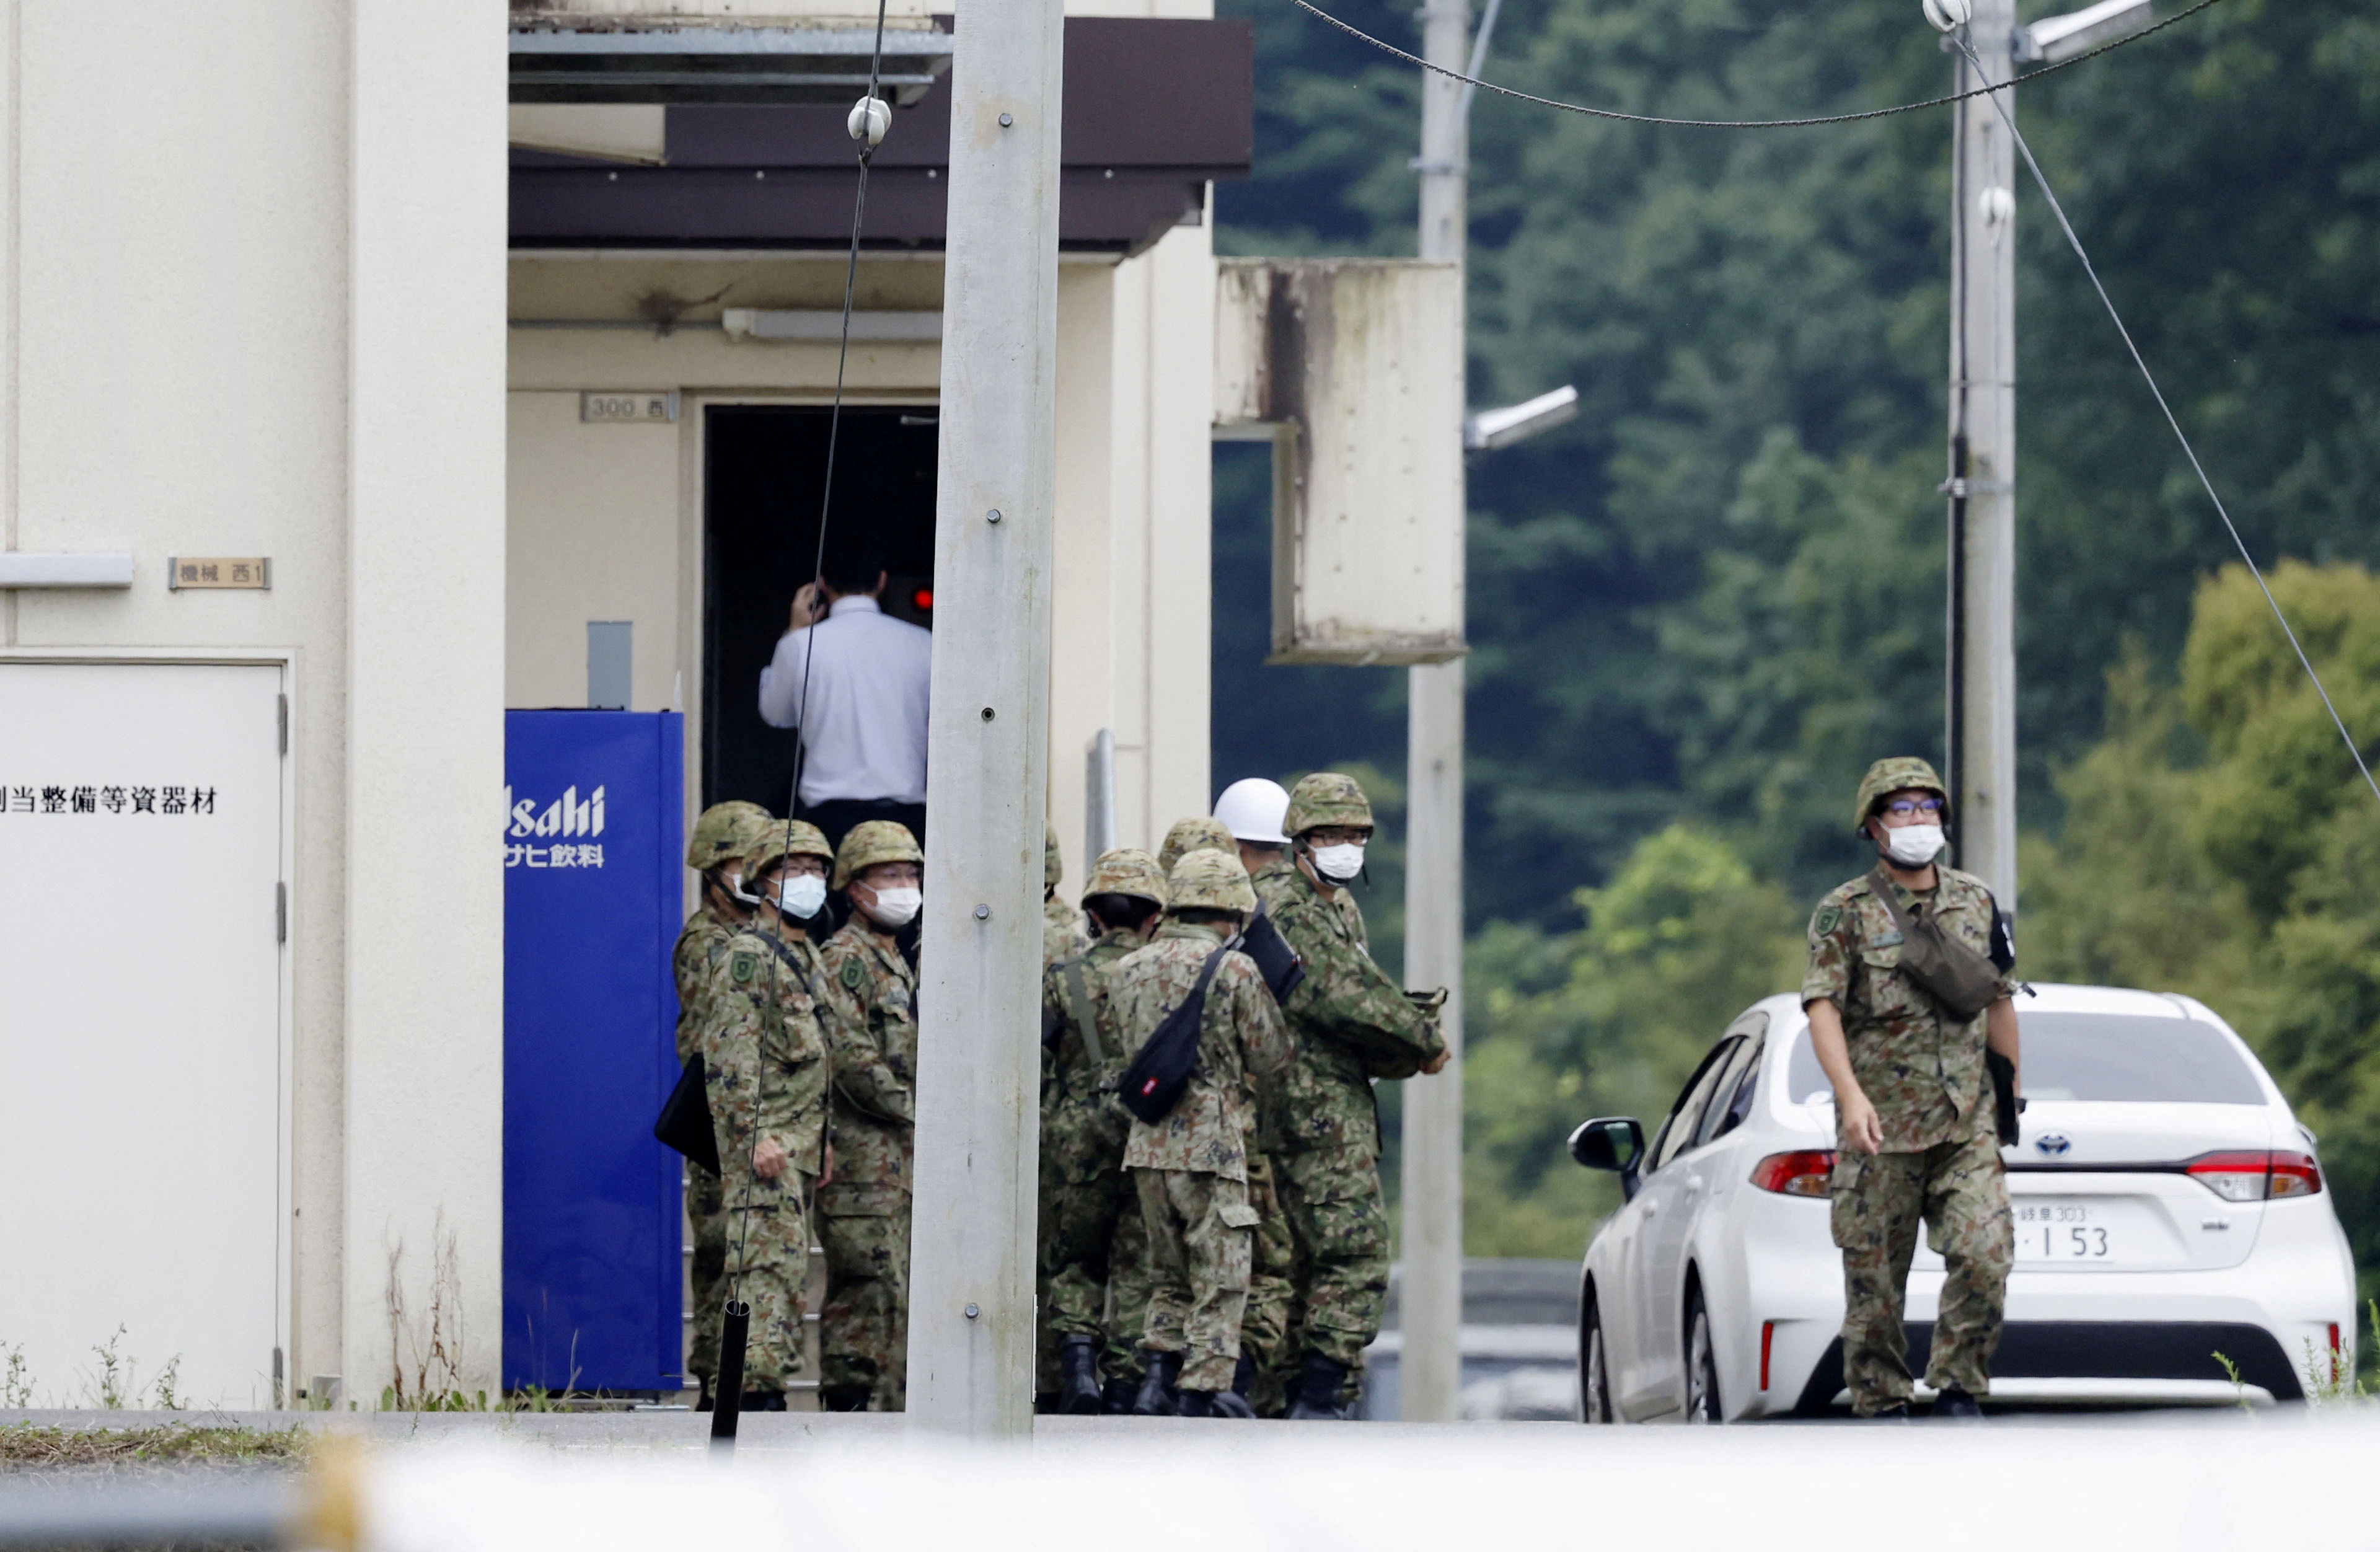 La policía local le aseguró a la agencia de noticias AFP que el tirador era un candidato de la división terrestre de las tropas japonesas de 18 años que fue detenido en el lugar. (REUTERS)